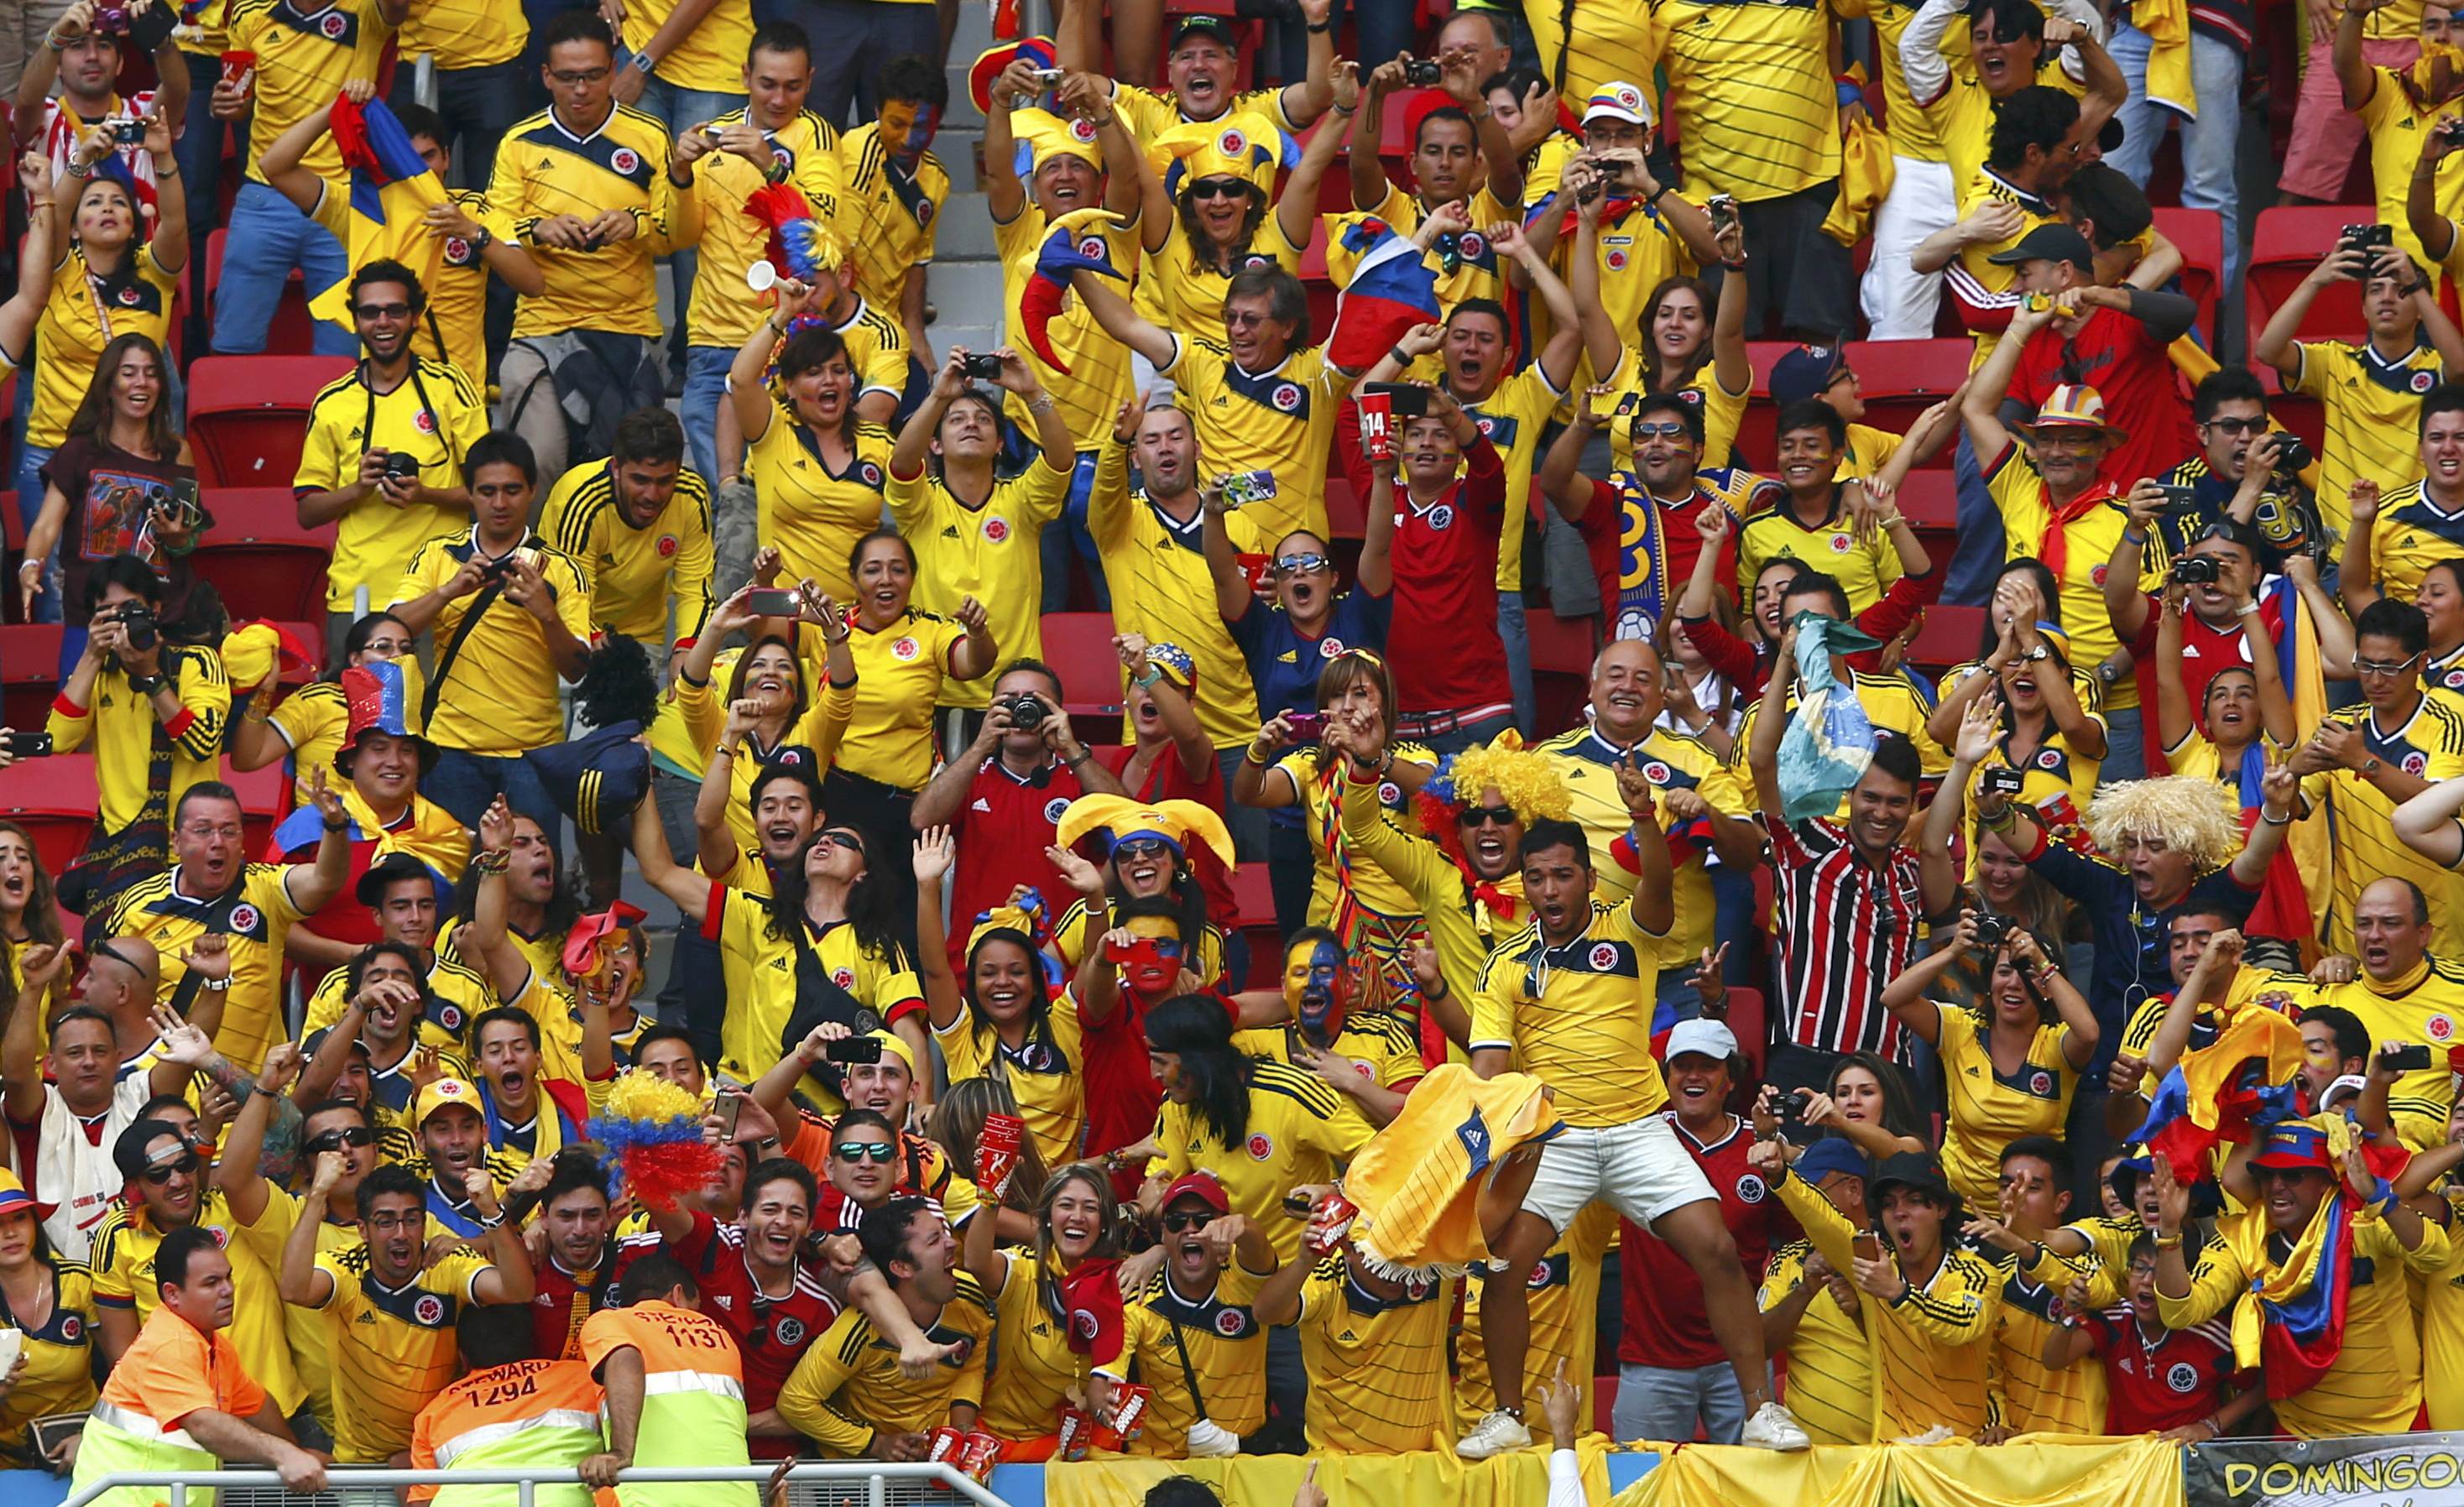 Bogotá decreta Ley seca durante el juego Colombia-Japón